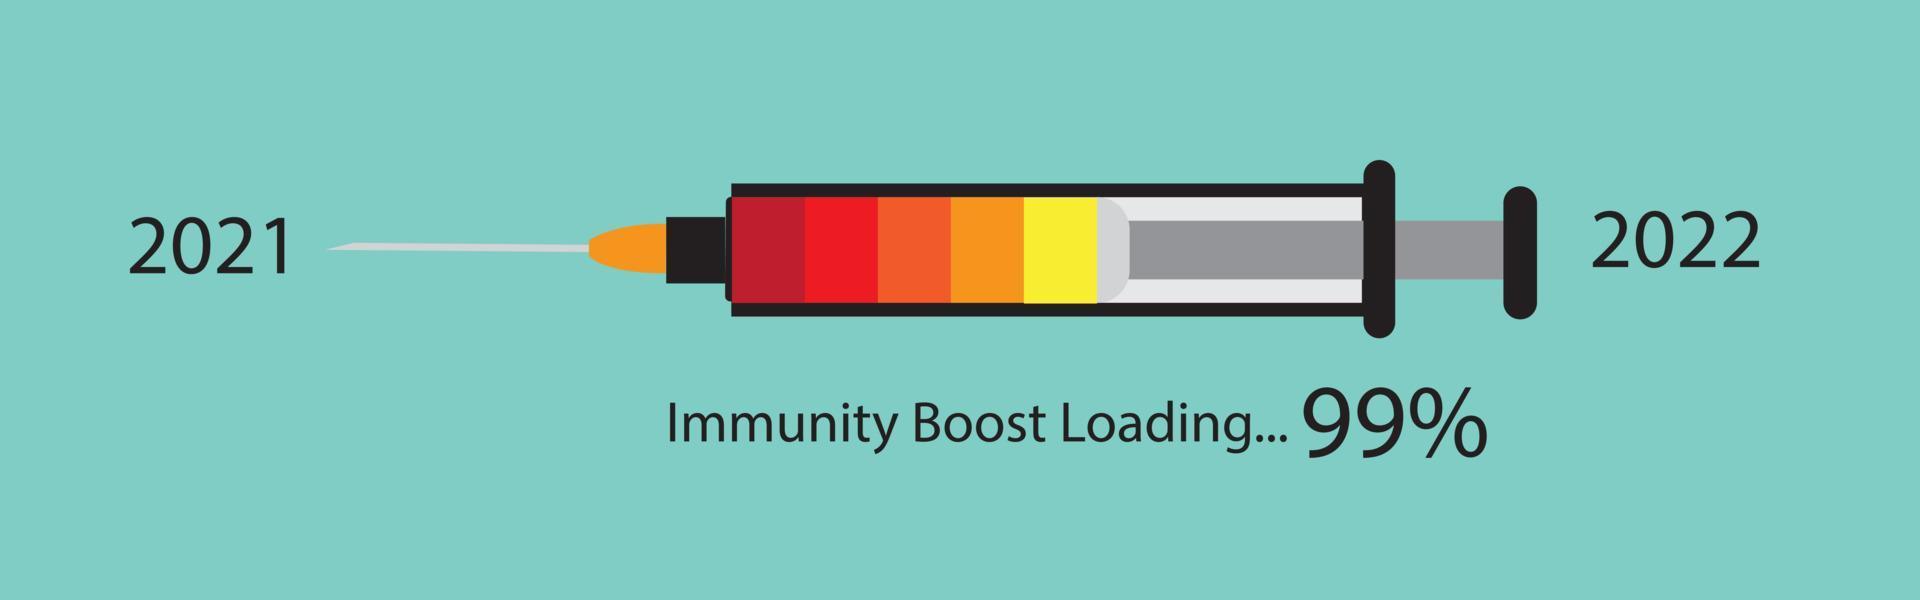 codicioso 19 inmunidad inyección vacunas. mejorar inmunidad. crecimiento aumentar concepto ideas vector ilustración